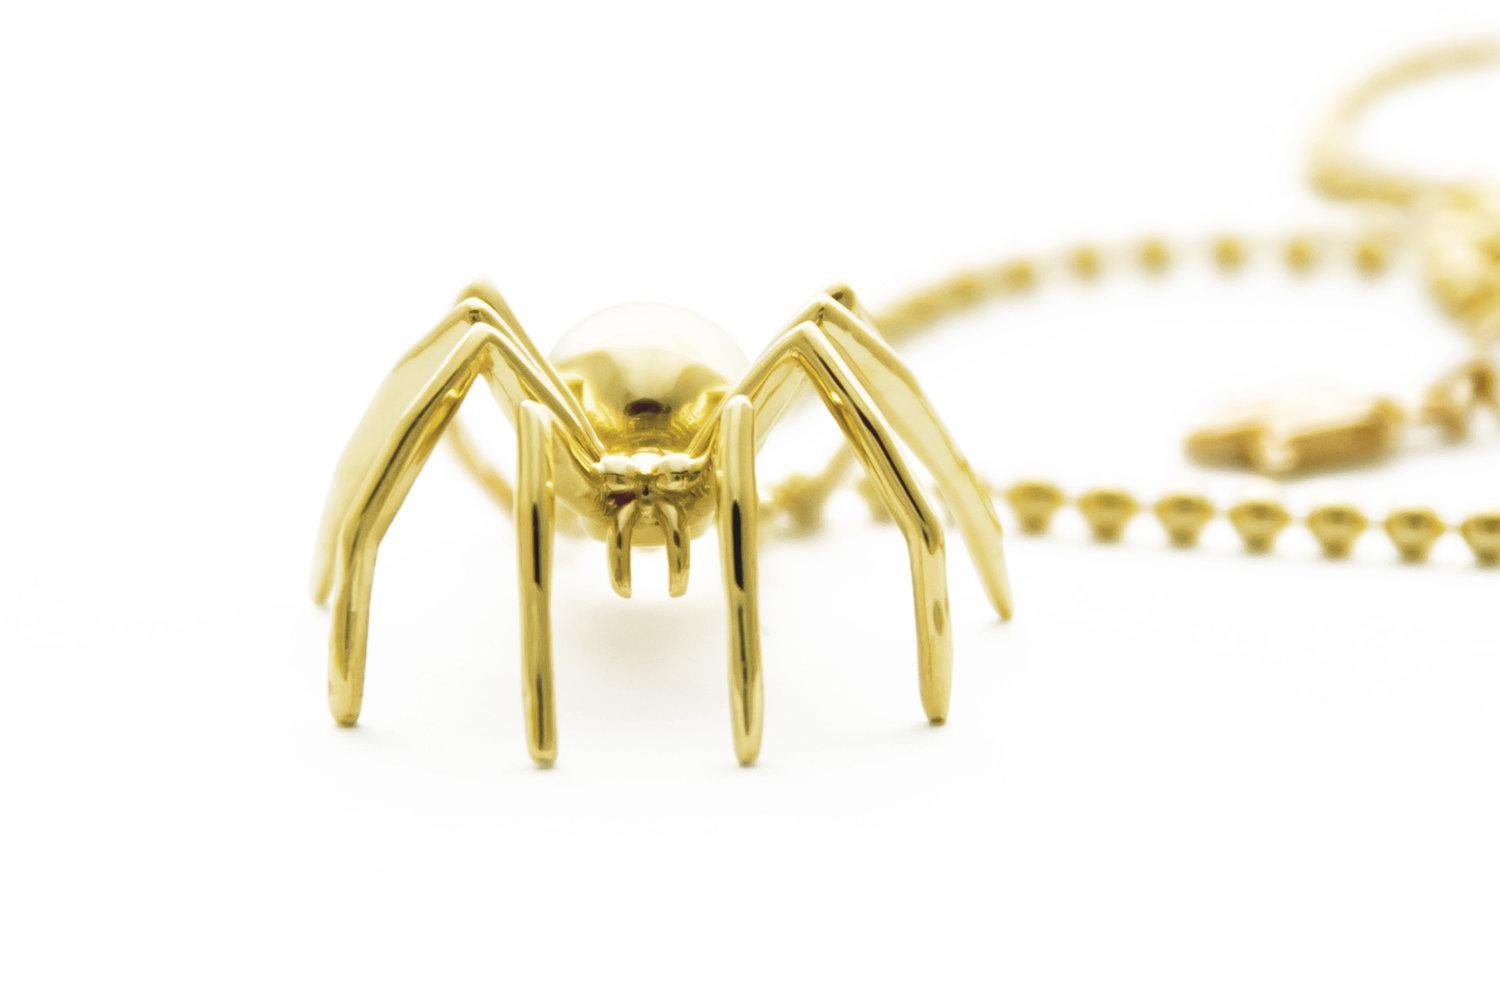 Le captivant pendentif Medium Spider en or jaune massif est une représentation exquise de la créativité et de l'autodétermination. Tout au long de l'histoire, l'araignée a symbolisé la maîtrise de son propre destin, captivant notre imagination et